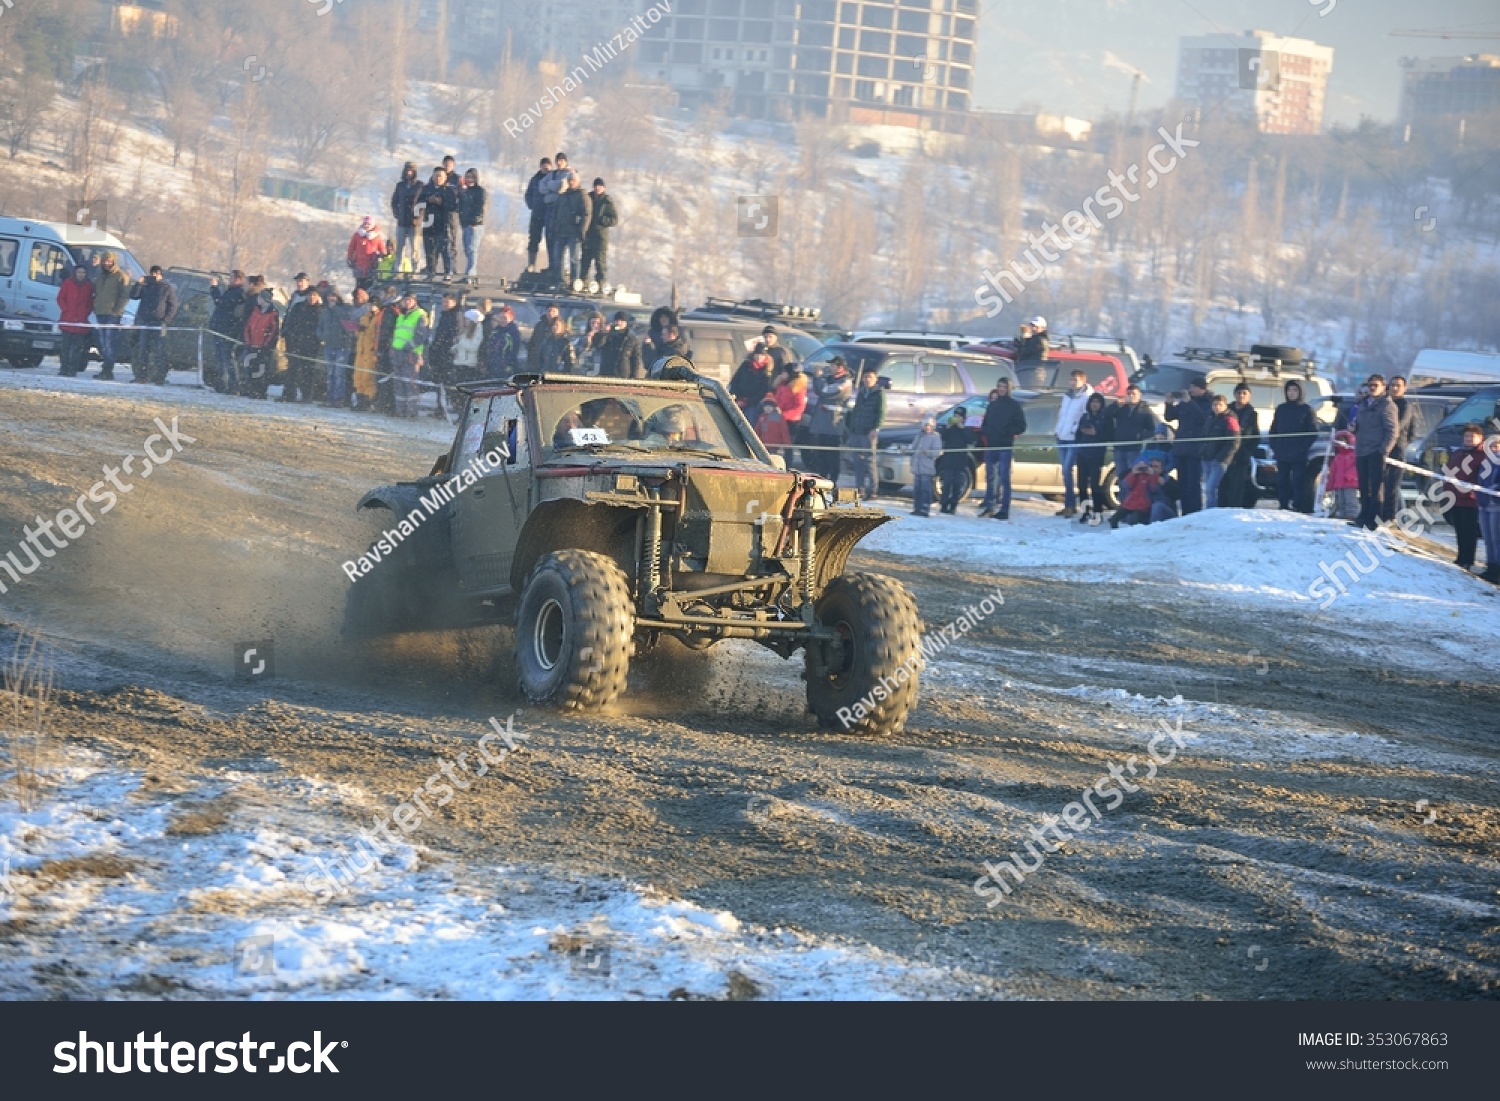 12月16日,哈萨克斯坦阿拉木图- Maslow:racing